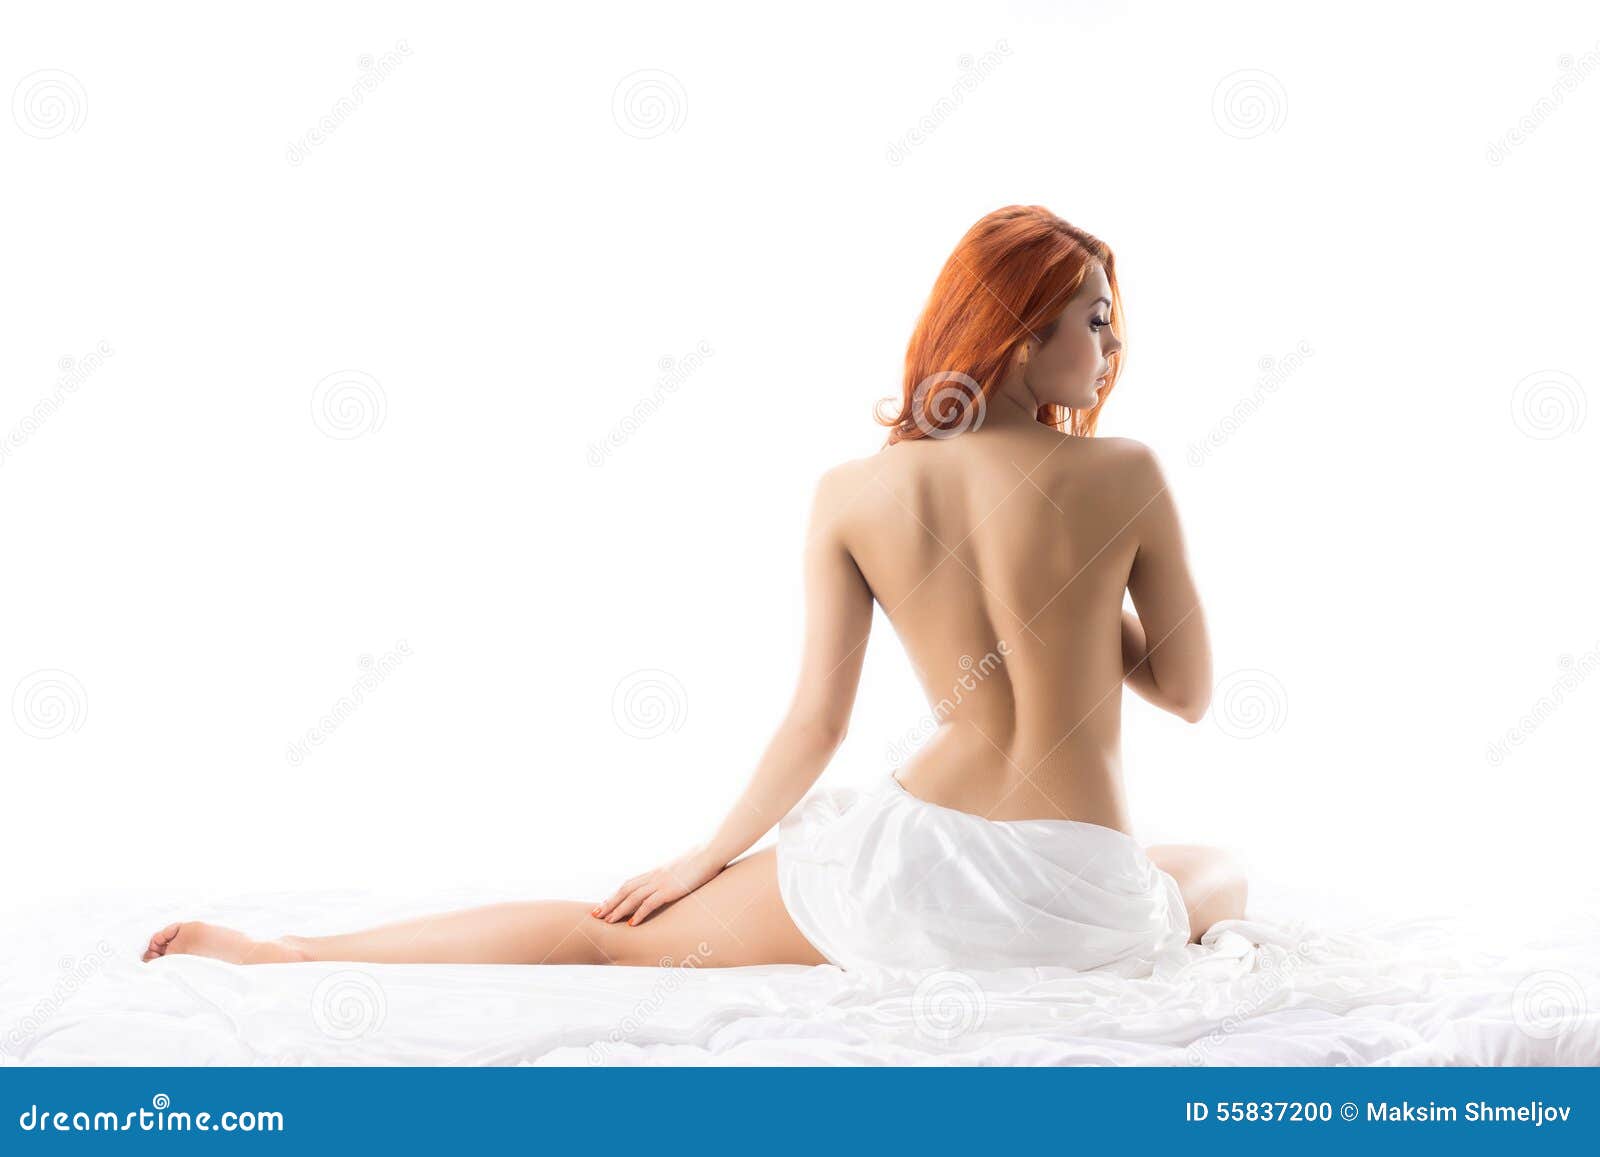 redhead woman Nude